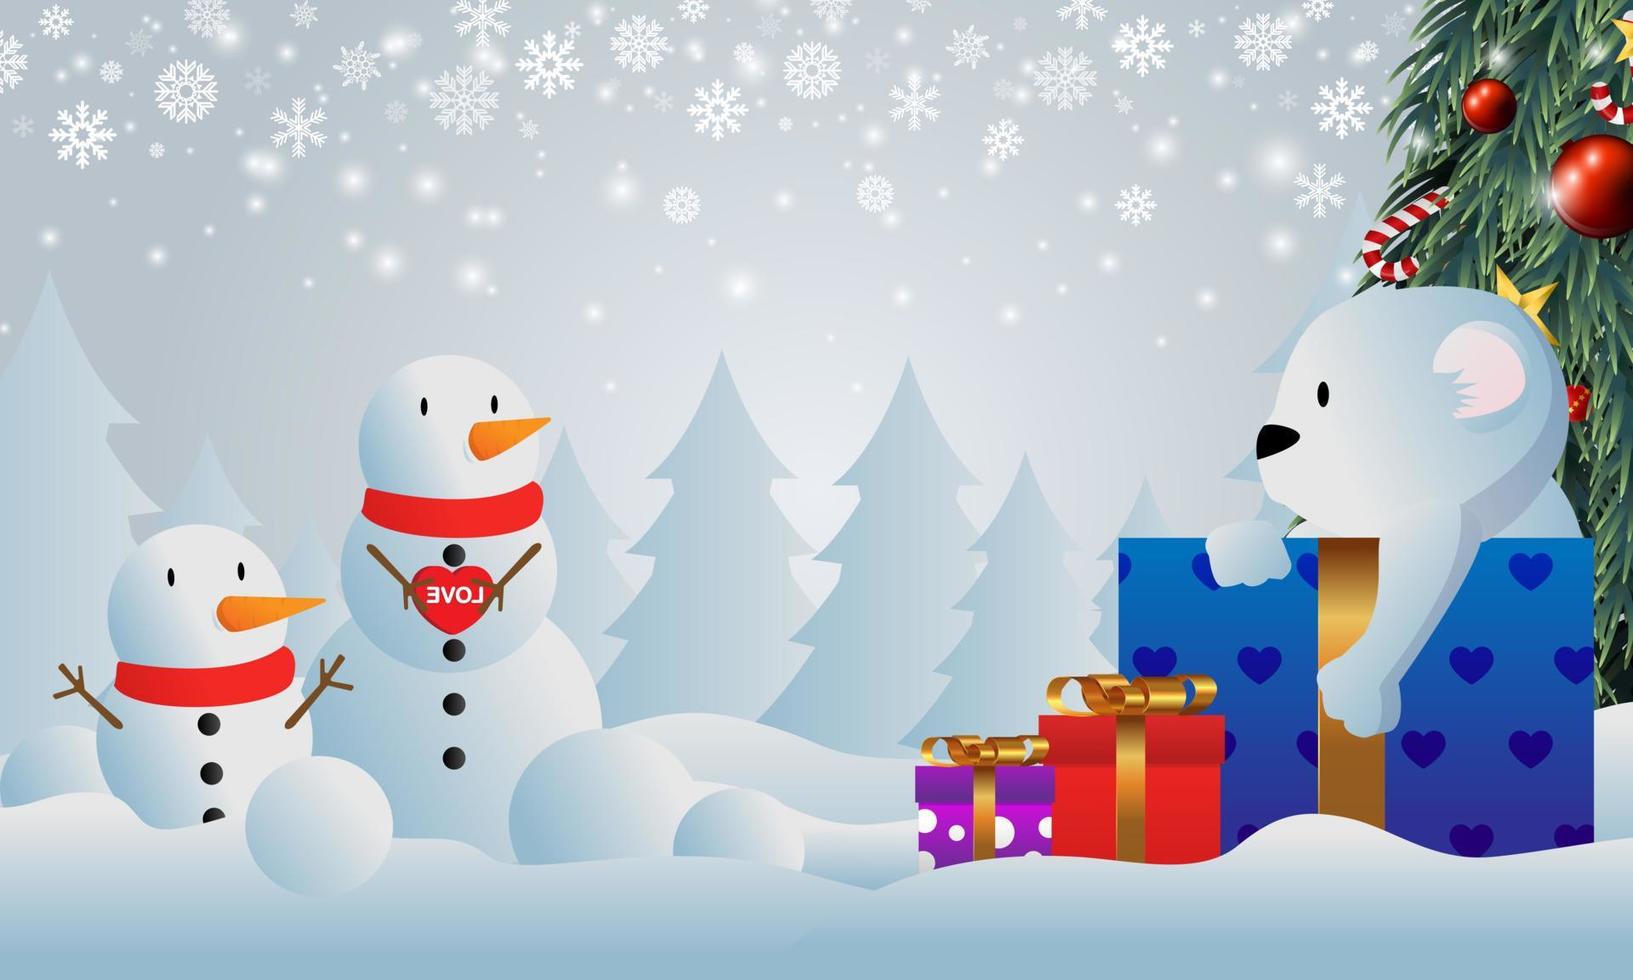 cadeautjes onder de kerstboom gelegd. kerstcadeau in de sneeuw. diverse geschenken zoals teddyberen, geschenkdozen en snoepjes. vector